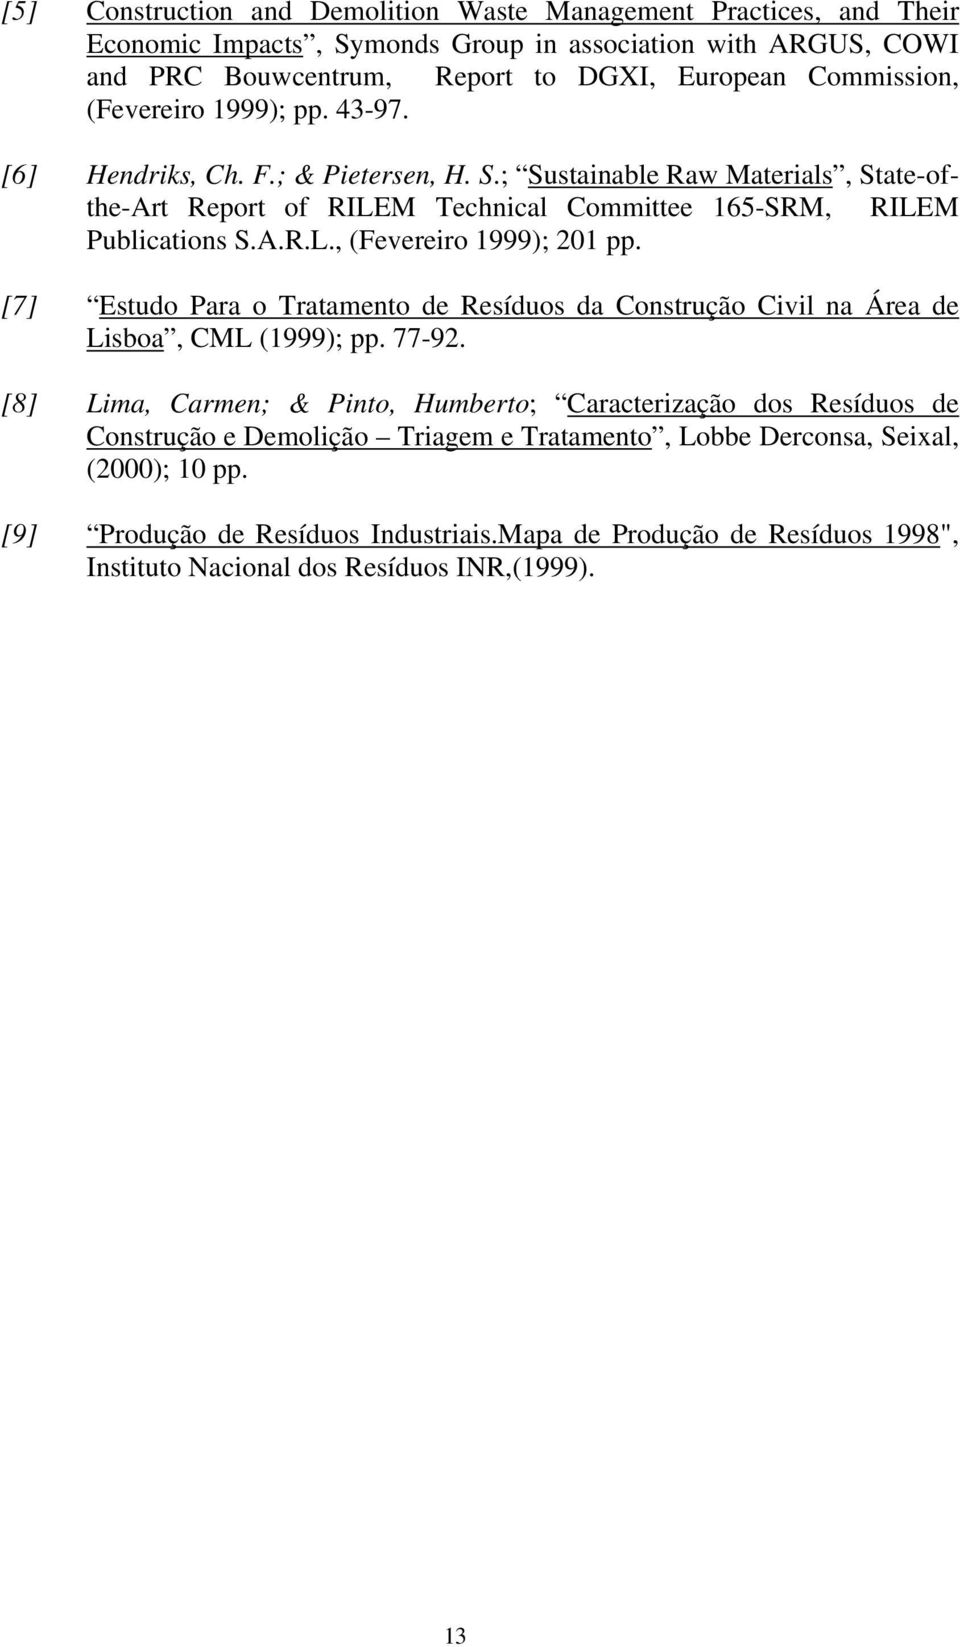 [7] Estudo Para o Tratamento de Resíduos da Construção Civil na Área de Lisboa, CML (1999); pp. 77-92.